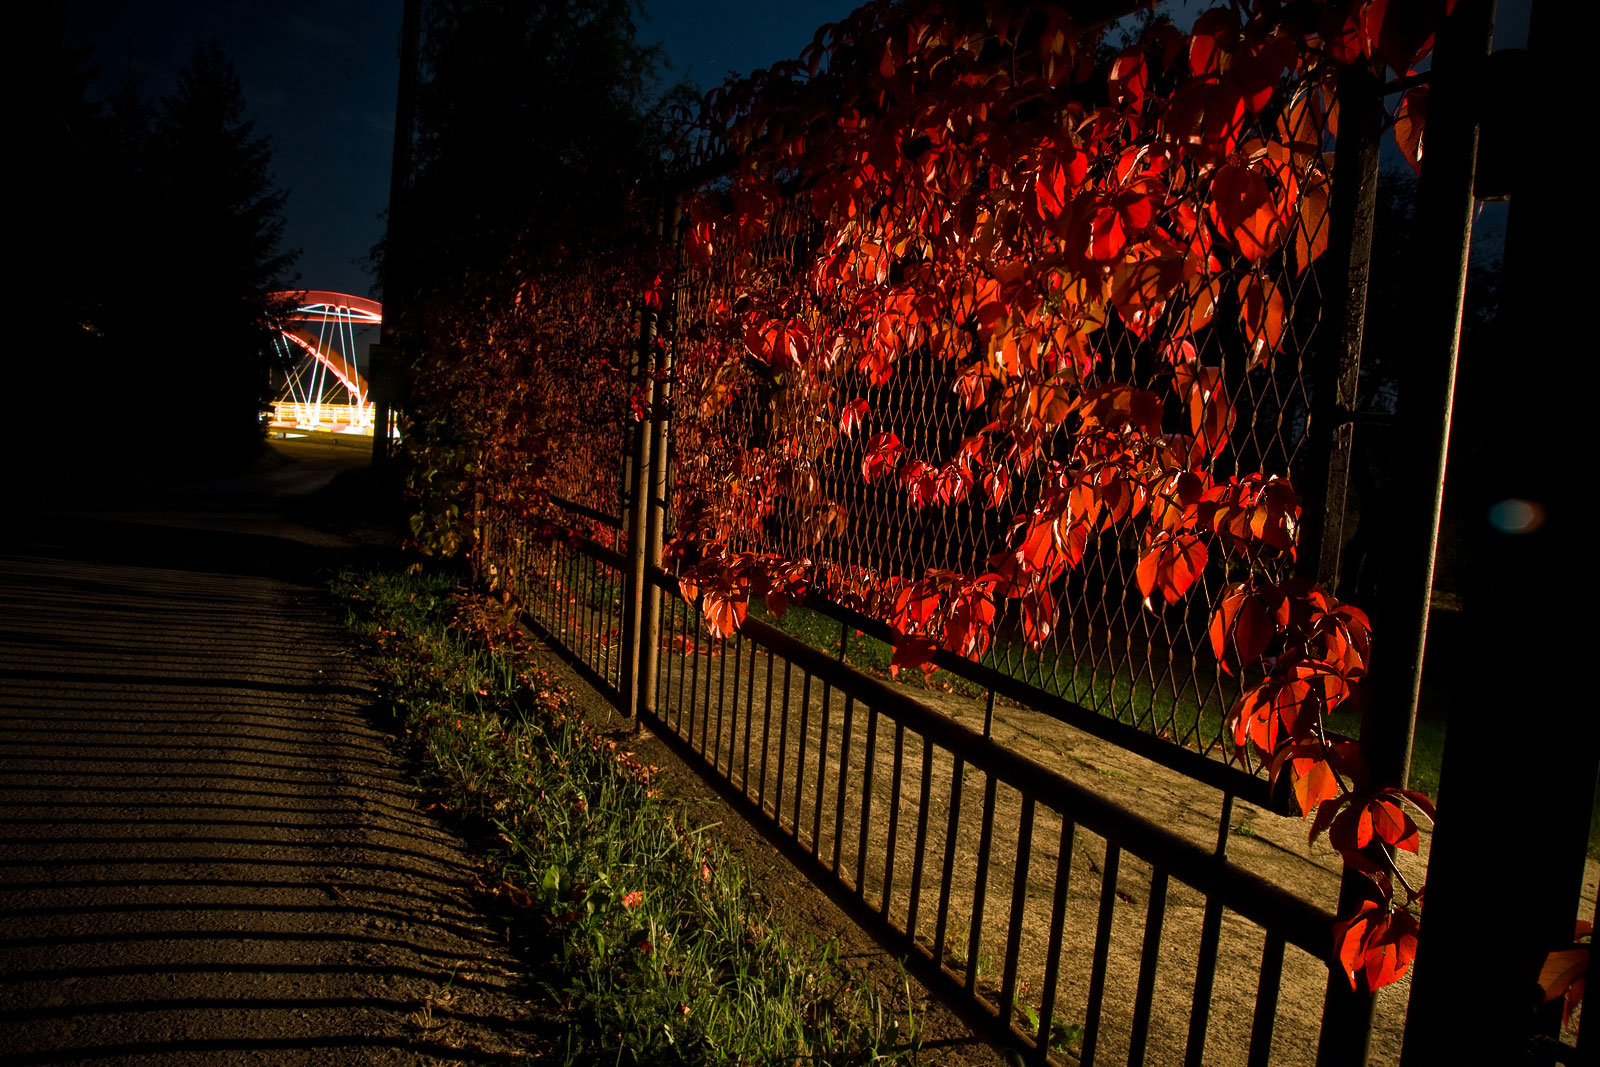 czerwone liście jesiennym wieczorem w Mogilnach przy wiadukcie